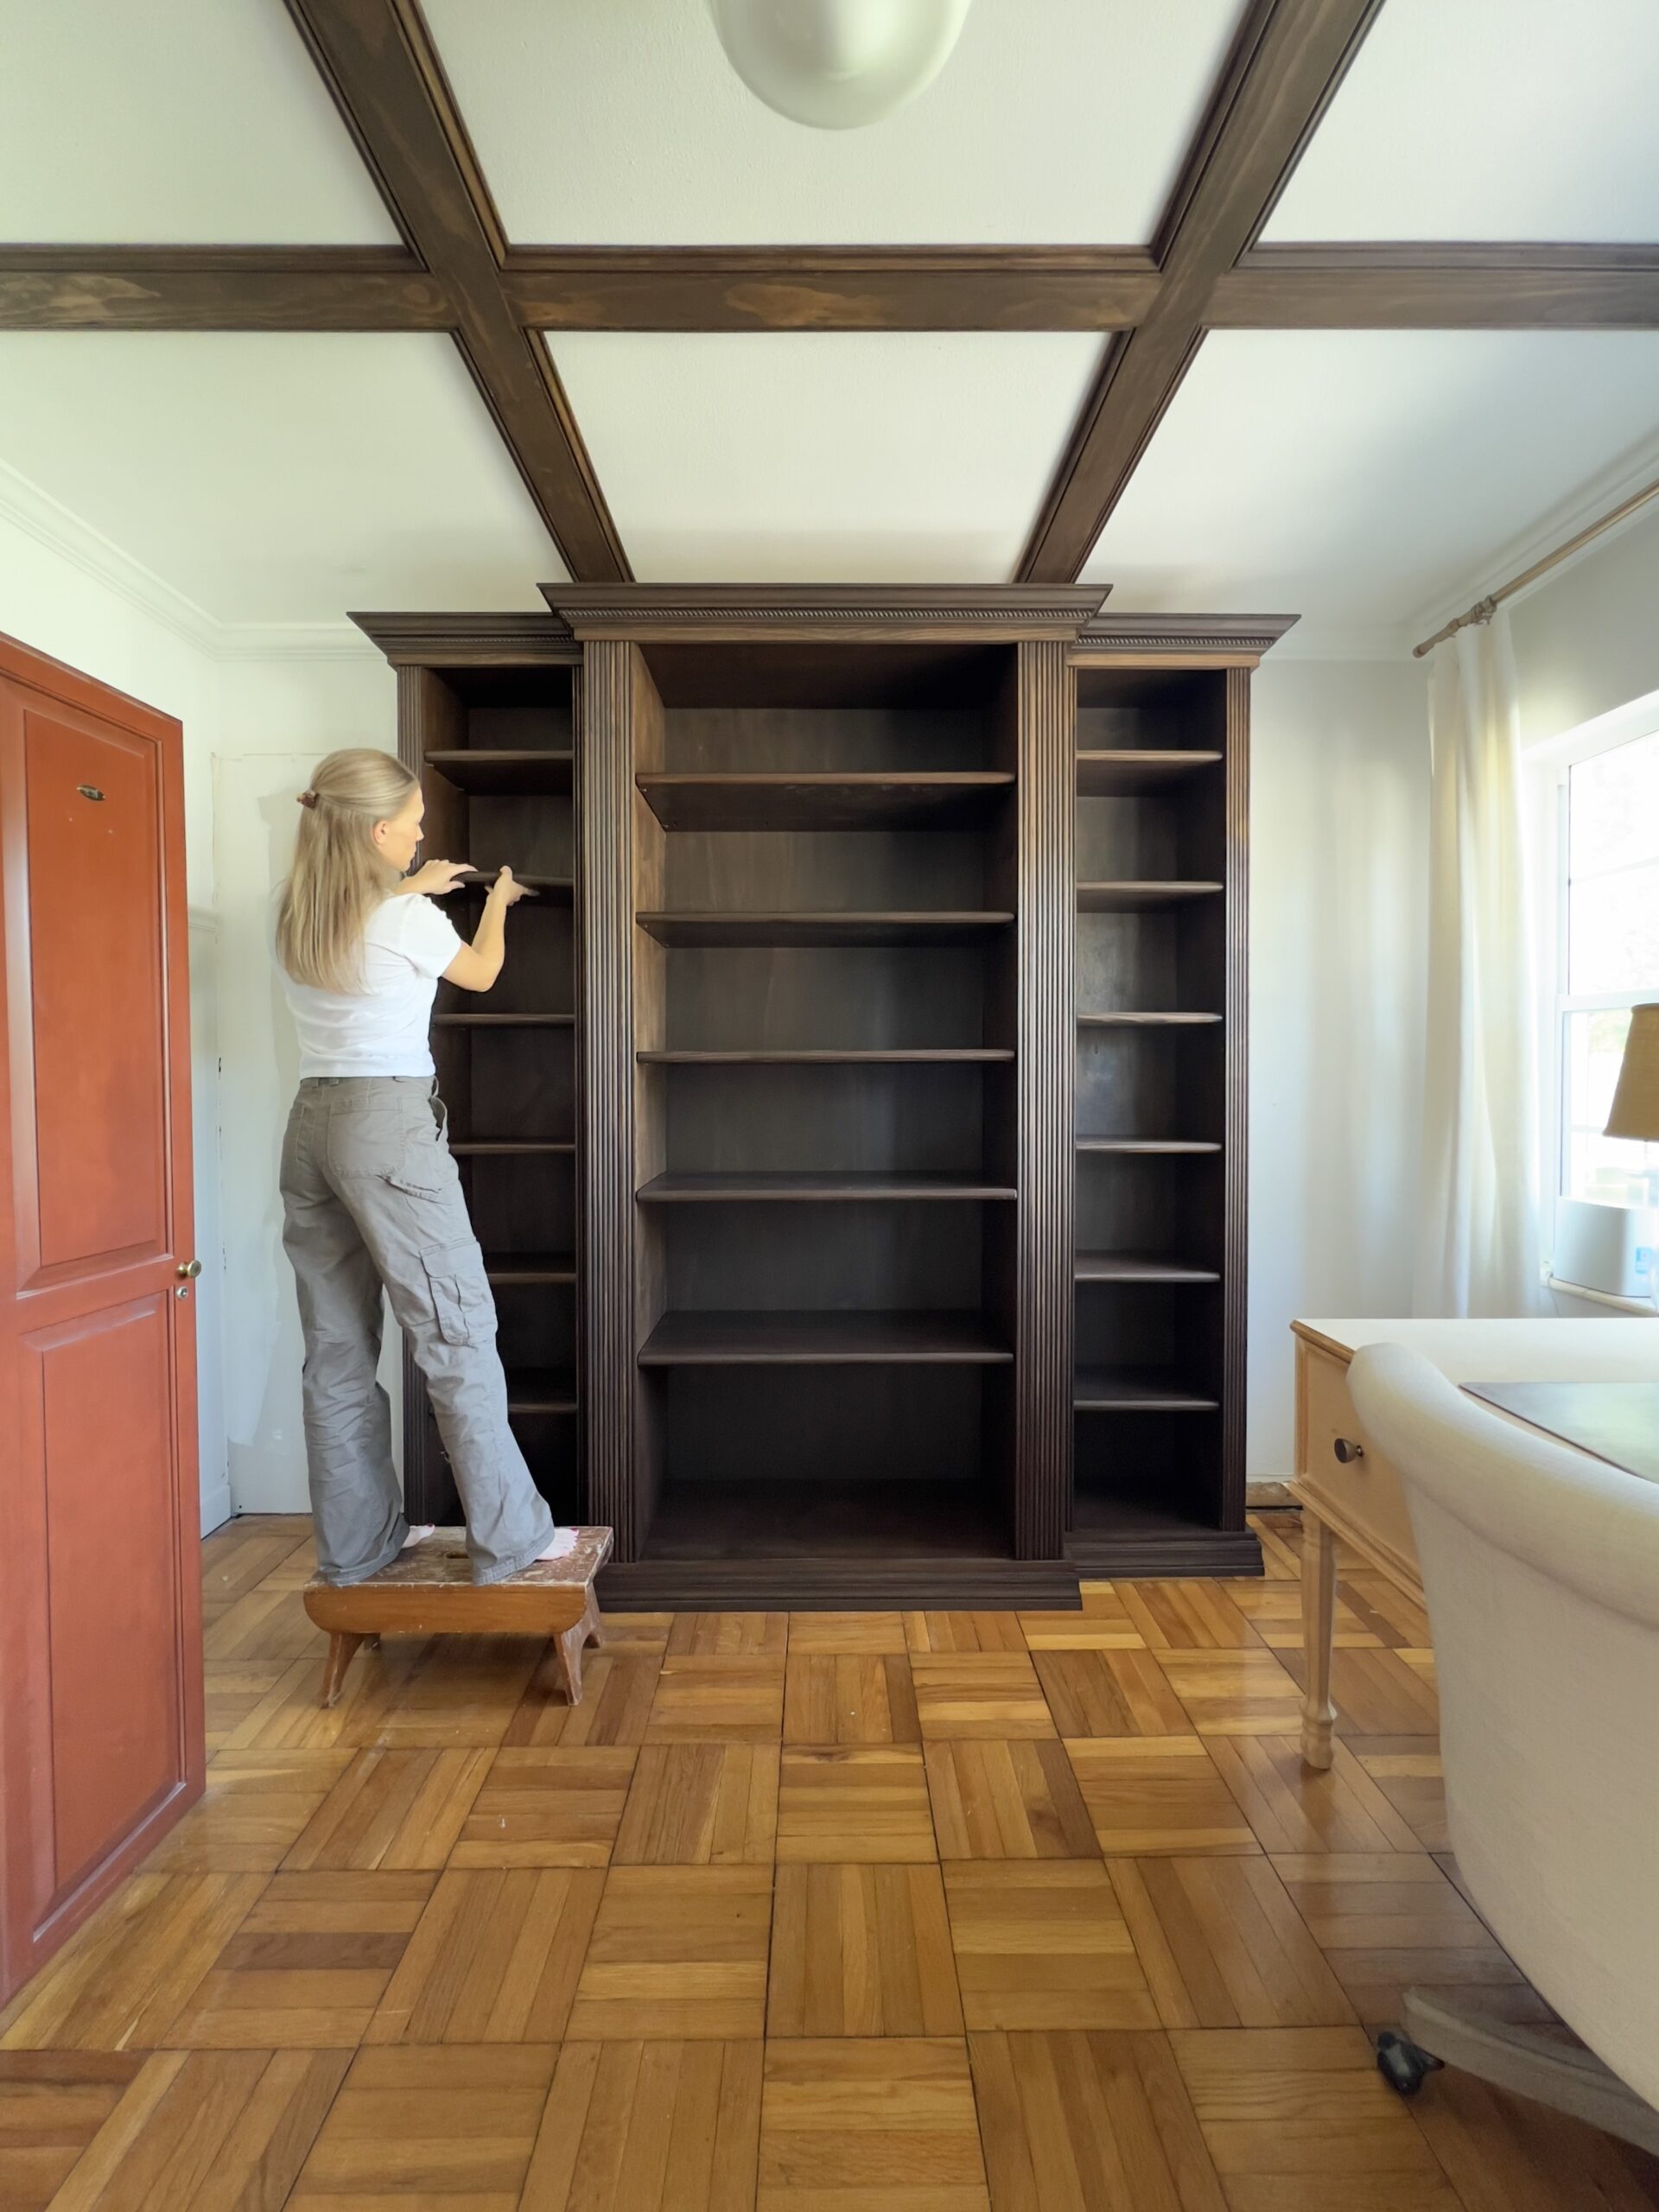 DIY Built-in Bookshelves